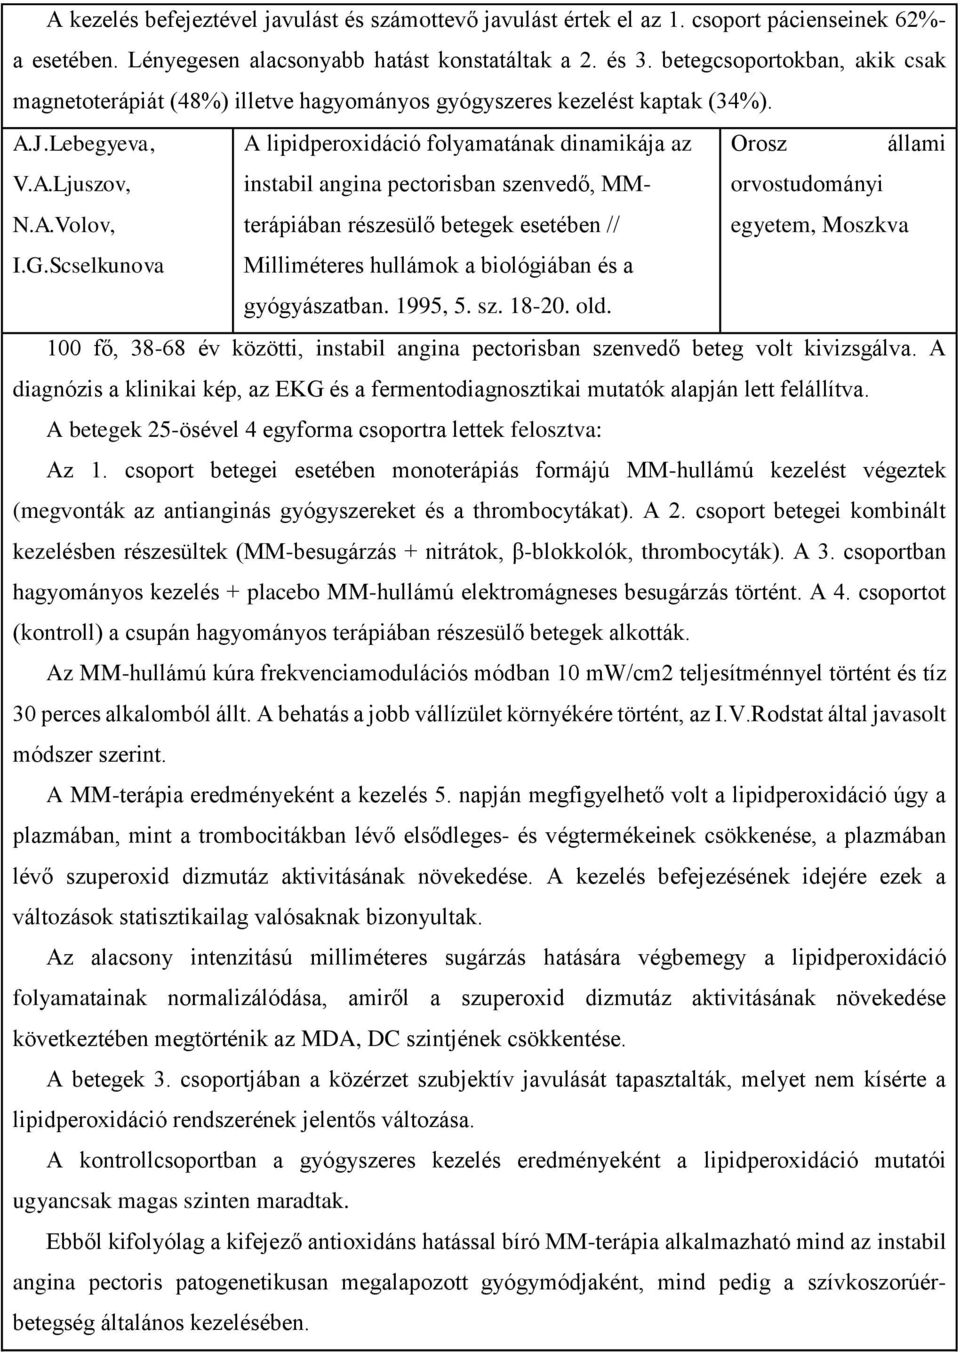 J.Lebegyeva, A lipidperoxidáció folyamatának dinamikája az Orosz állami V.A.Ljuszov, instabil angina pectorisban szenvedő, MMterápiában részesülő betegek esetében // egyetem, Moszkva orvostudományi N.